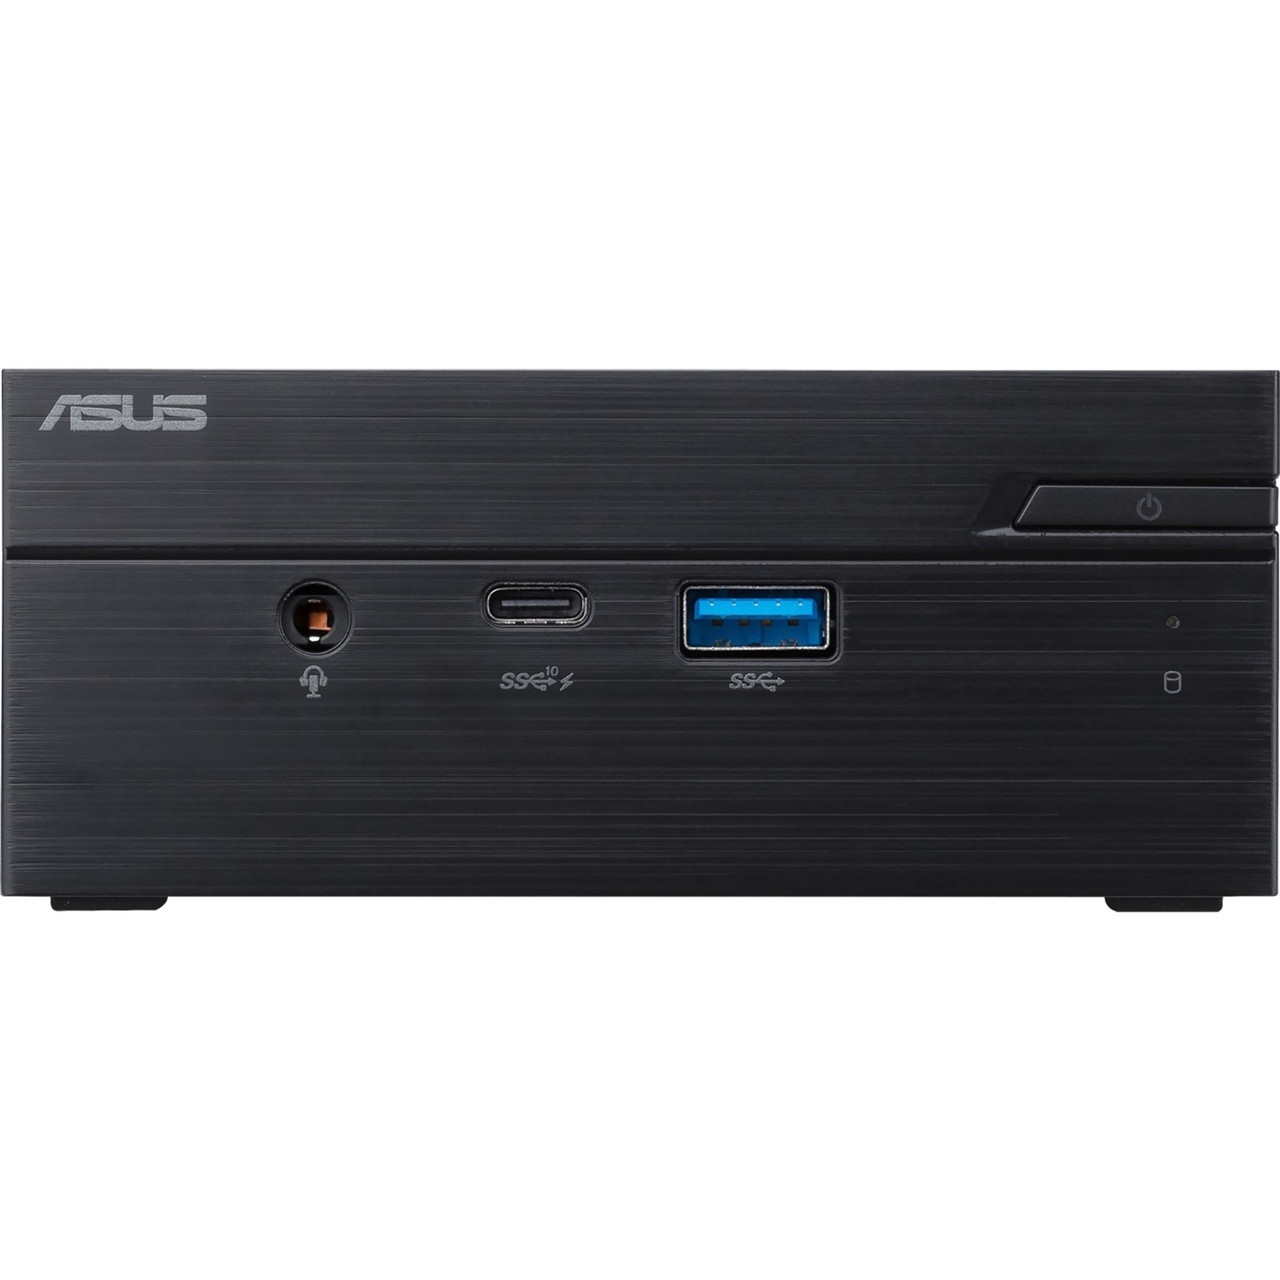 Asus PN41-BBF5000ATL Barebone System - Mini PC - Intel Celeron 11th Gen N5100 Quad-core (4 Core) - PN41-BBF5000ATL